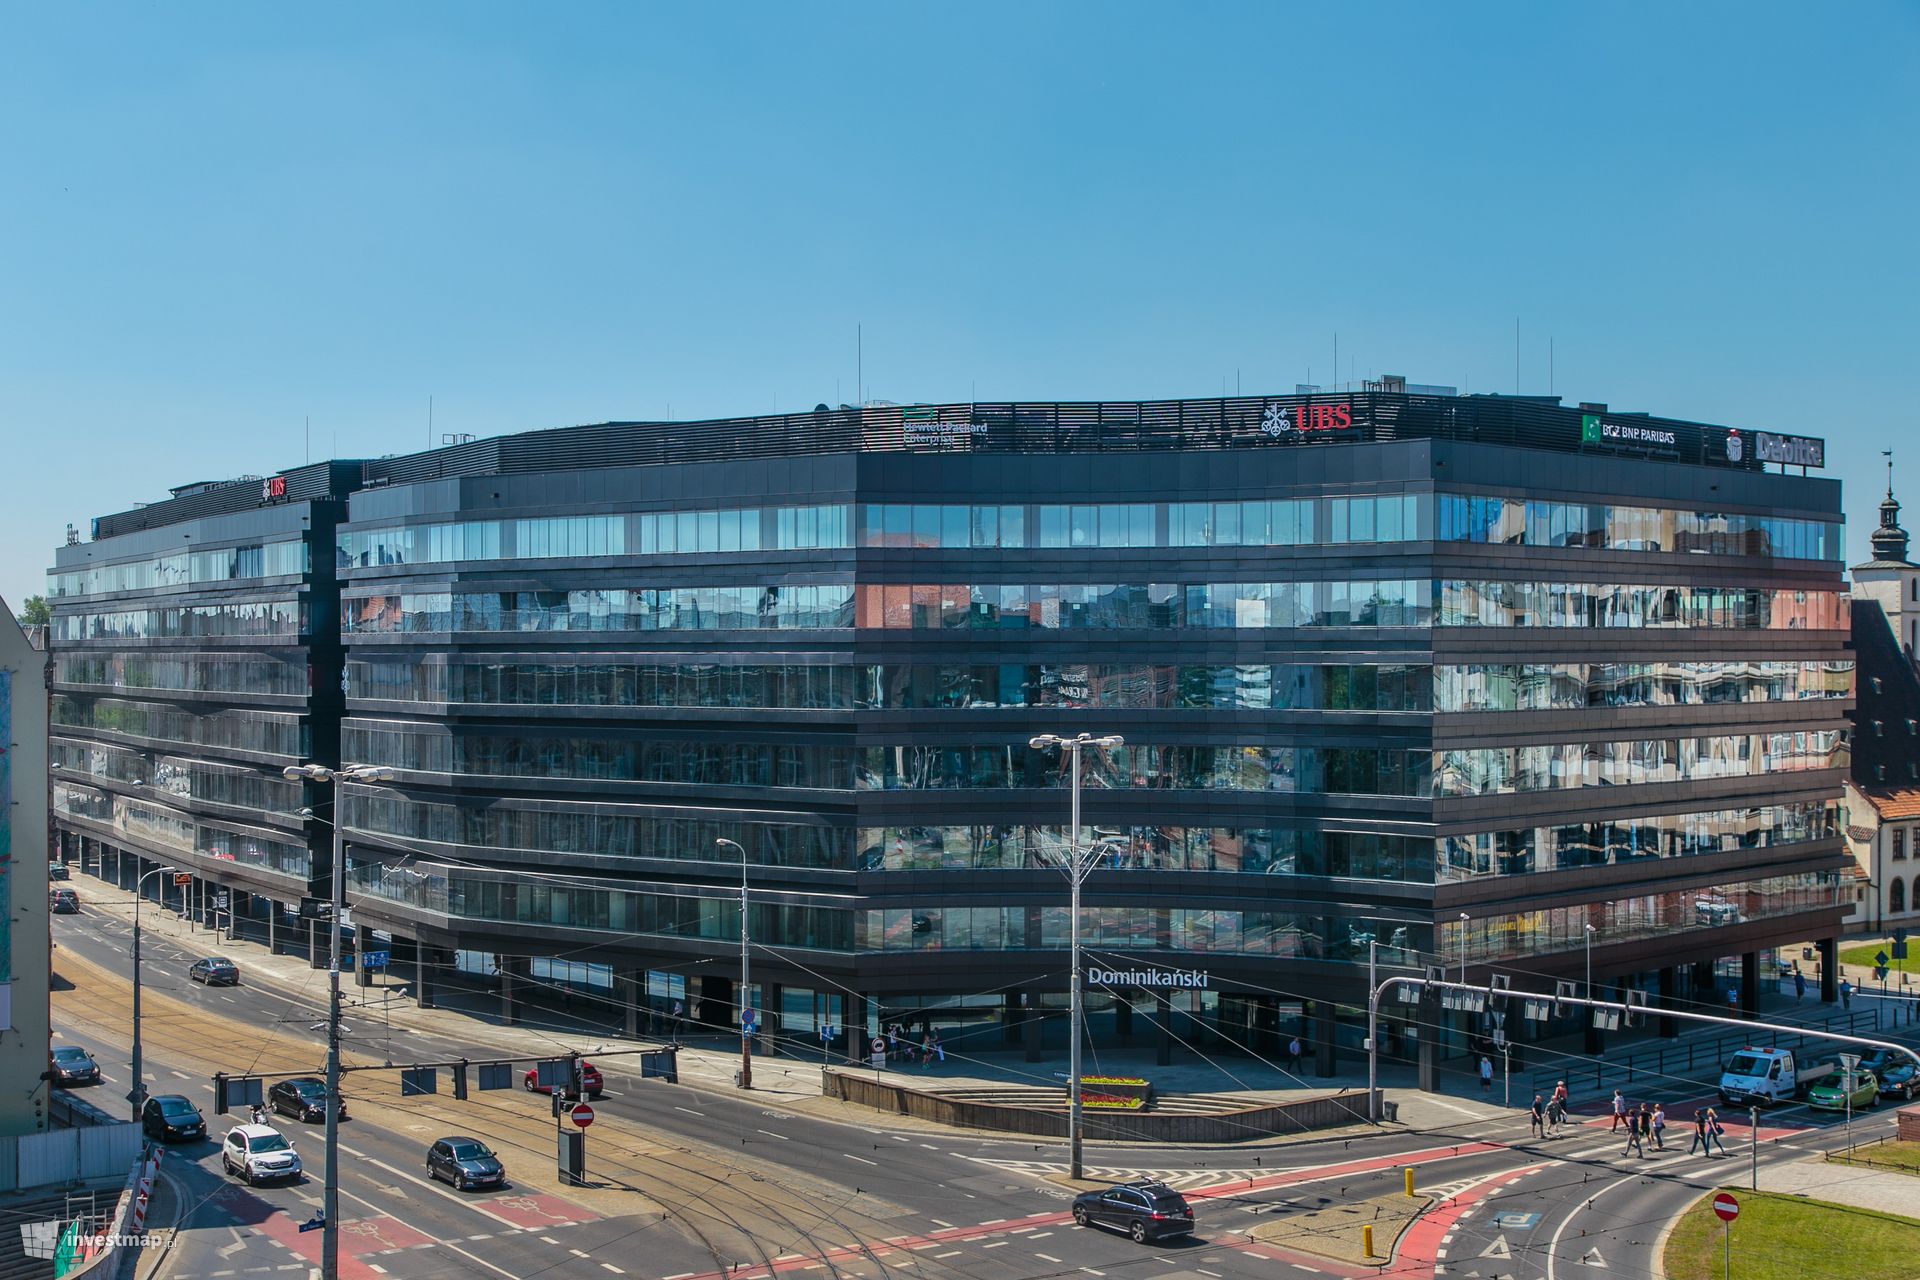 Światowy gigant, niemiecki koncern BASF otworzy nowe globalne biuro we Wrocławiu